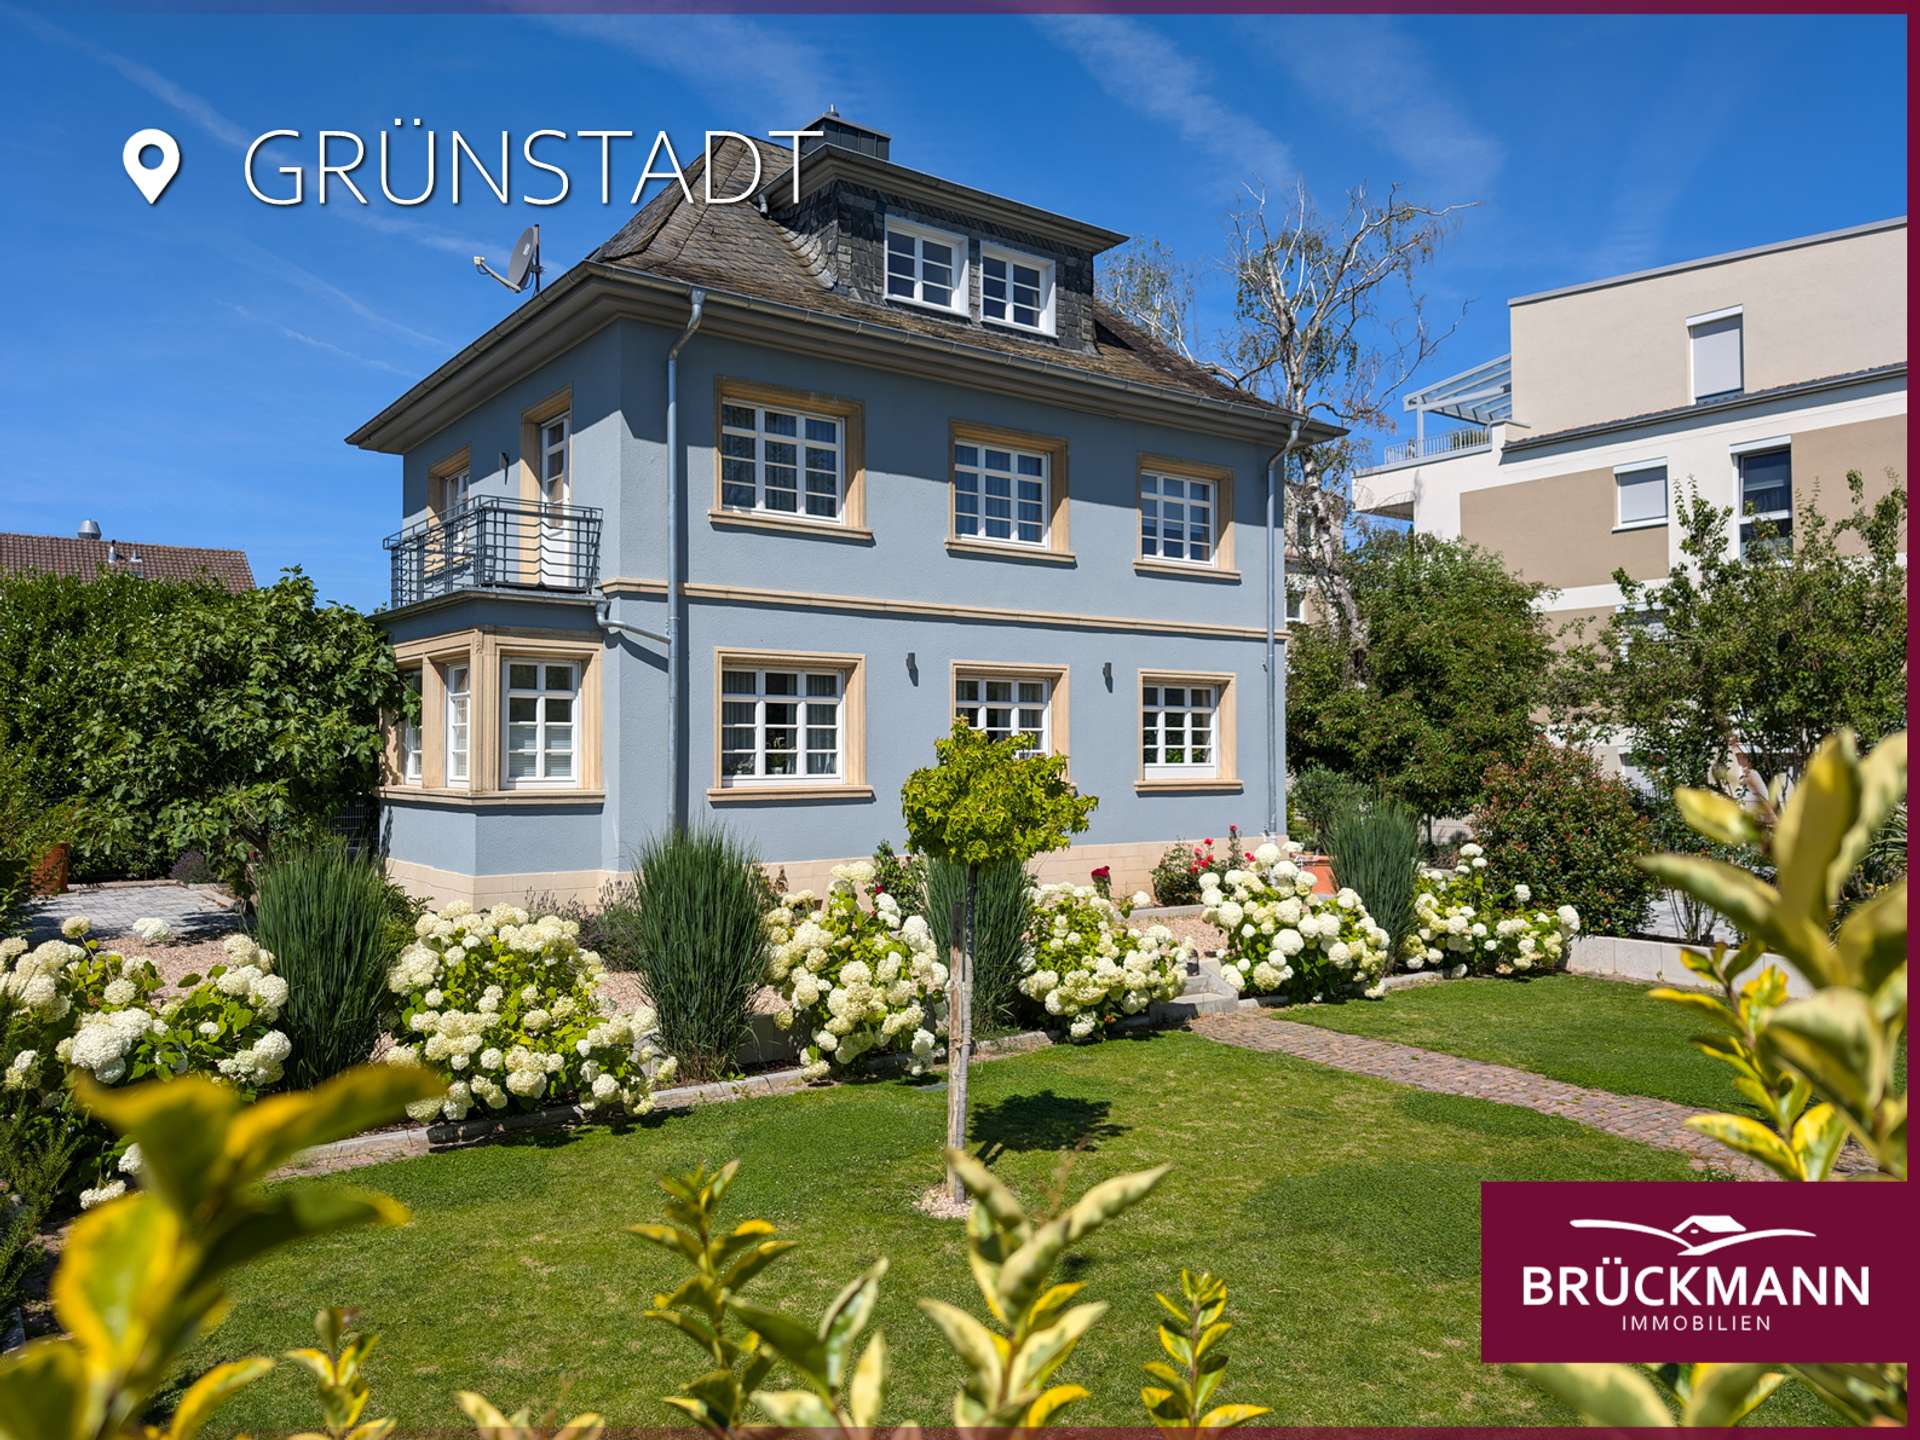 Zeitlos elegant & hochwertig renoviert: Ihre neue Stadtresidenz/Praxis/Kanzlei in prominenter Lage!, 67269 Grünstadt, Villa